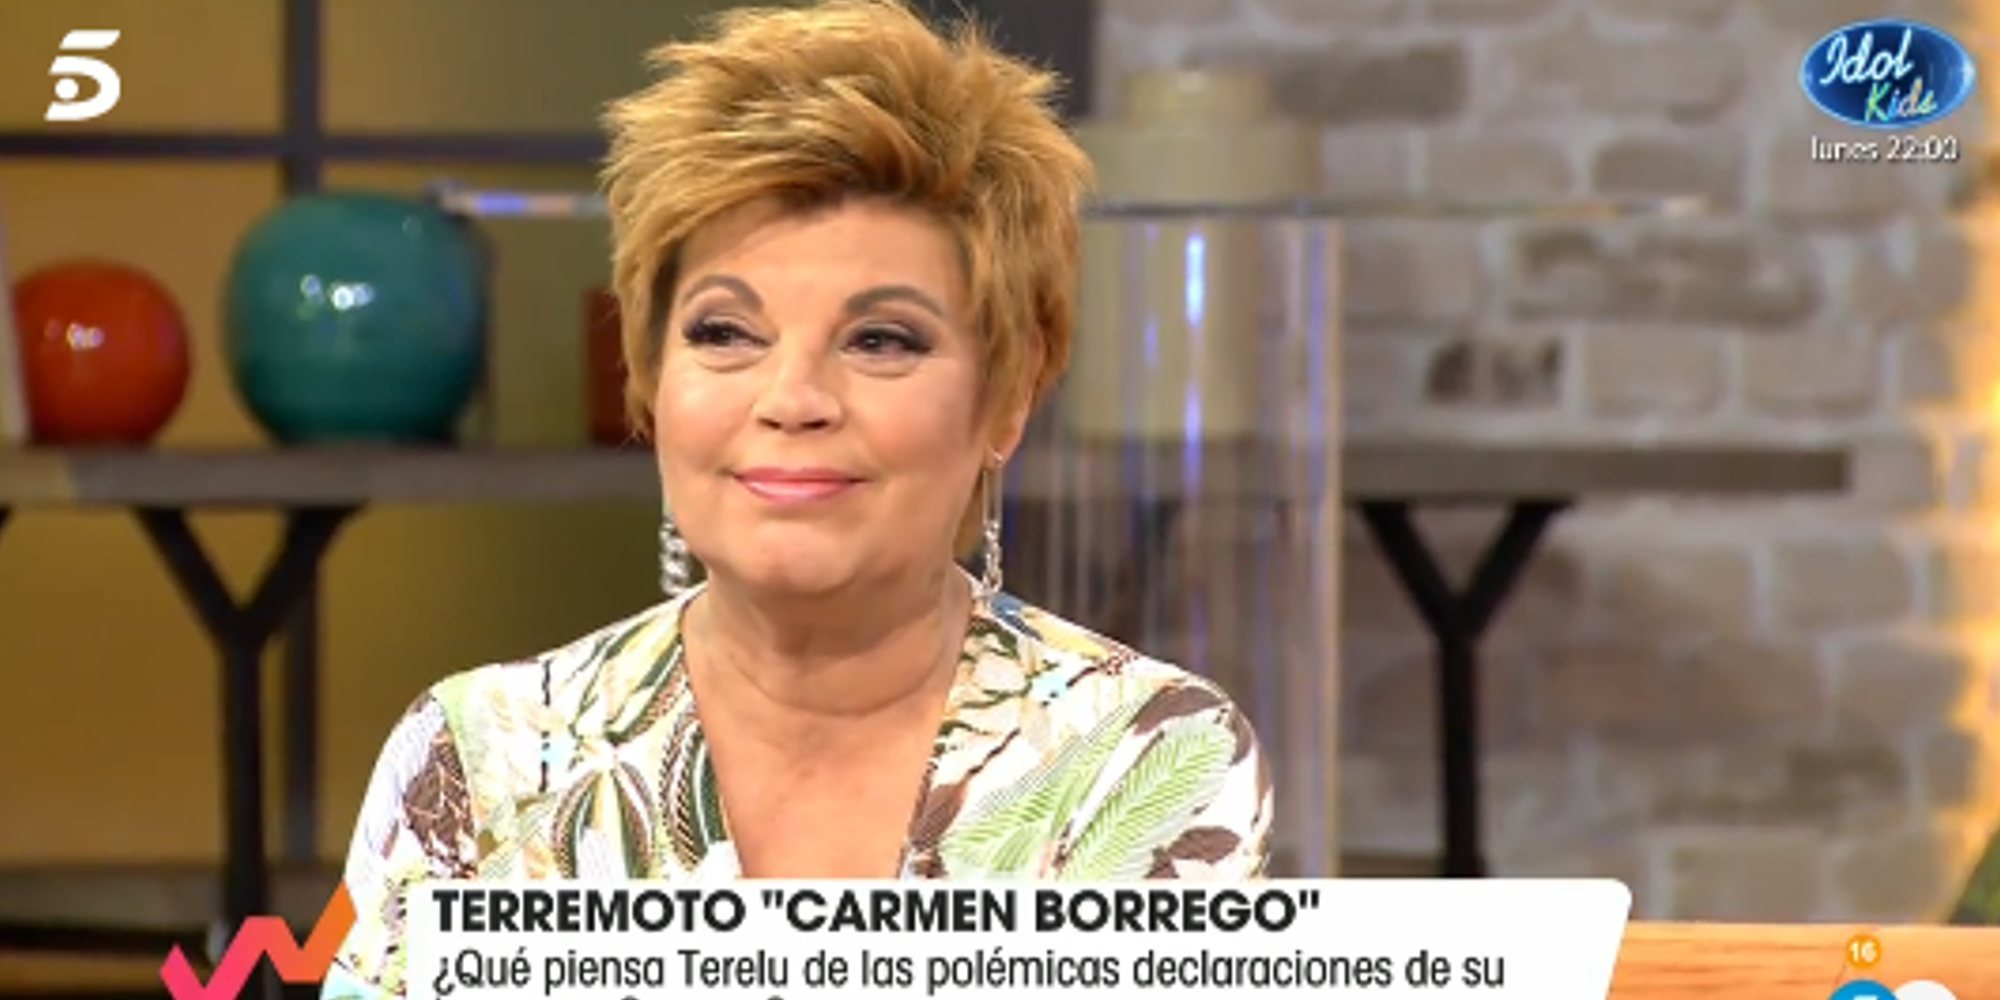 Terelu Campos, sobre la entrevista de Carmen Borrego: "Si me pronuncio violaría mi equilibrio emocional"